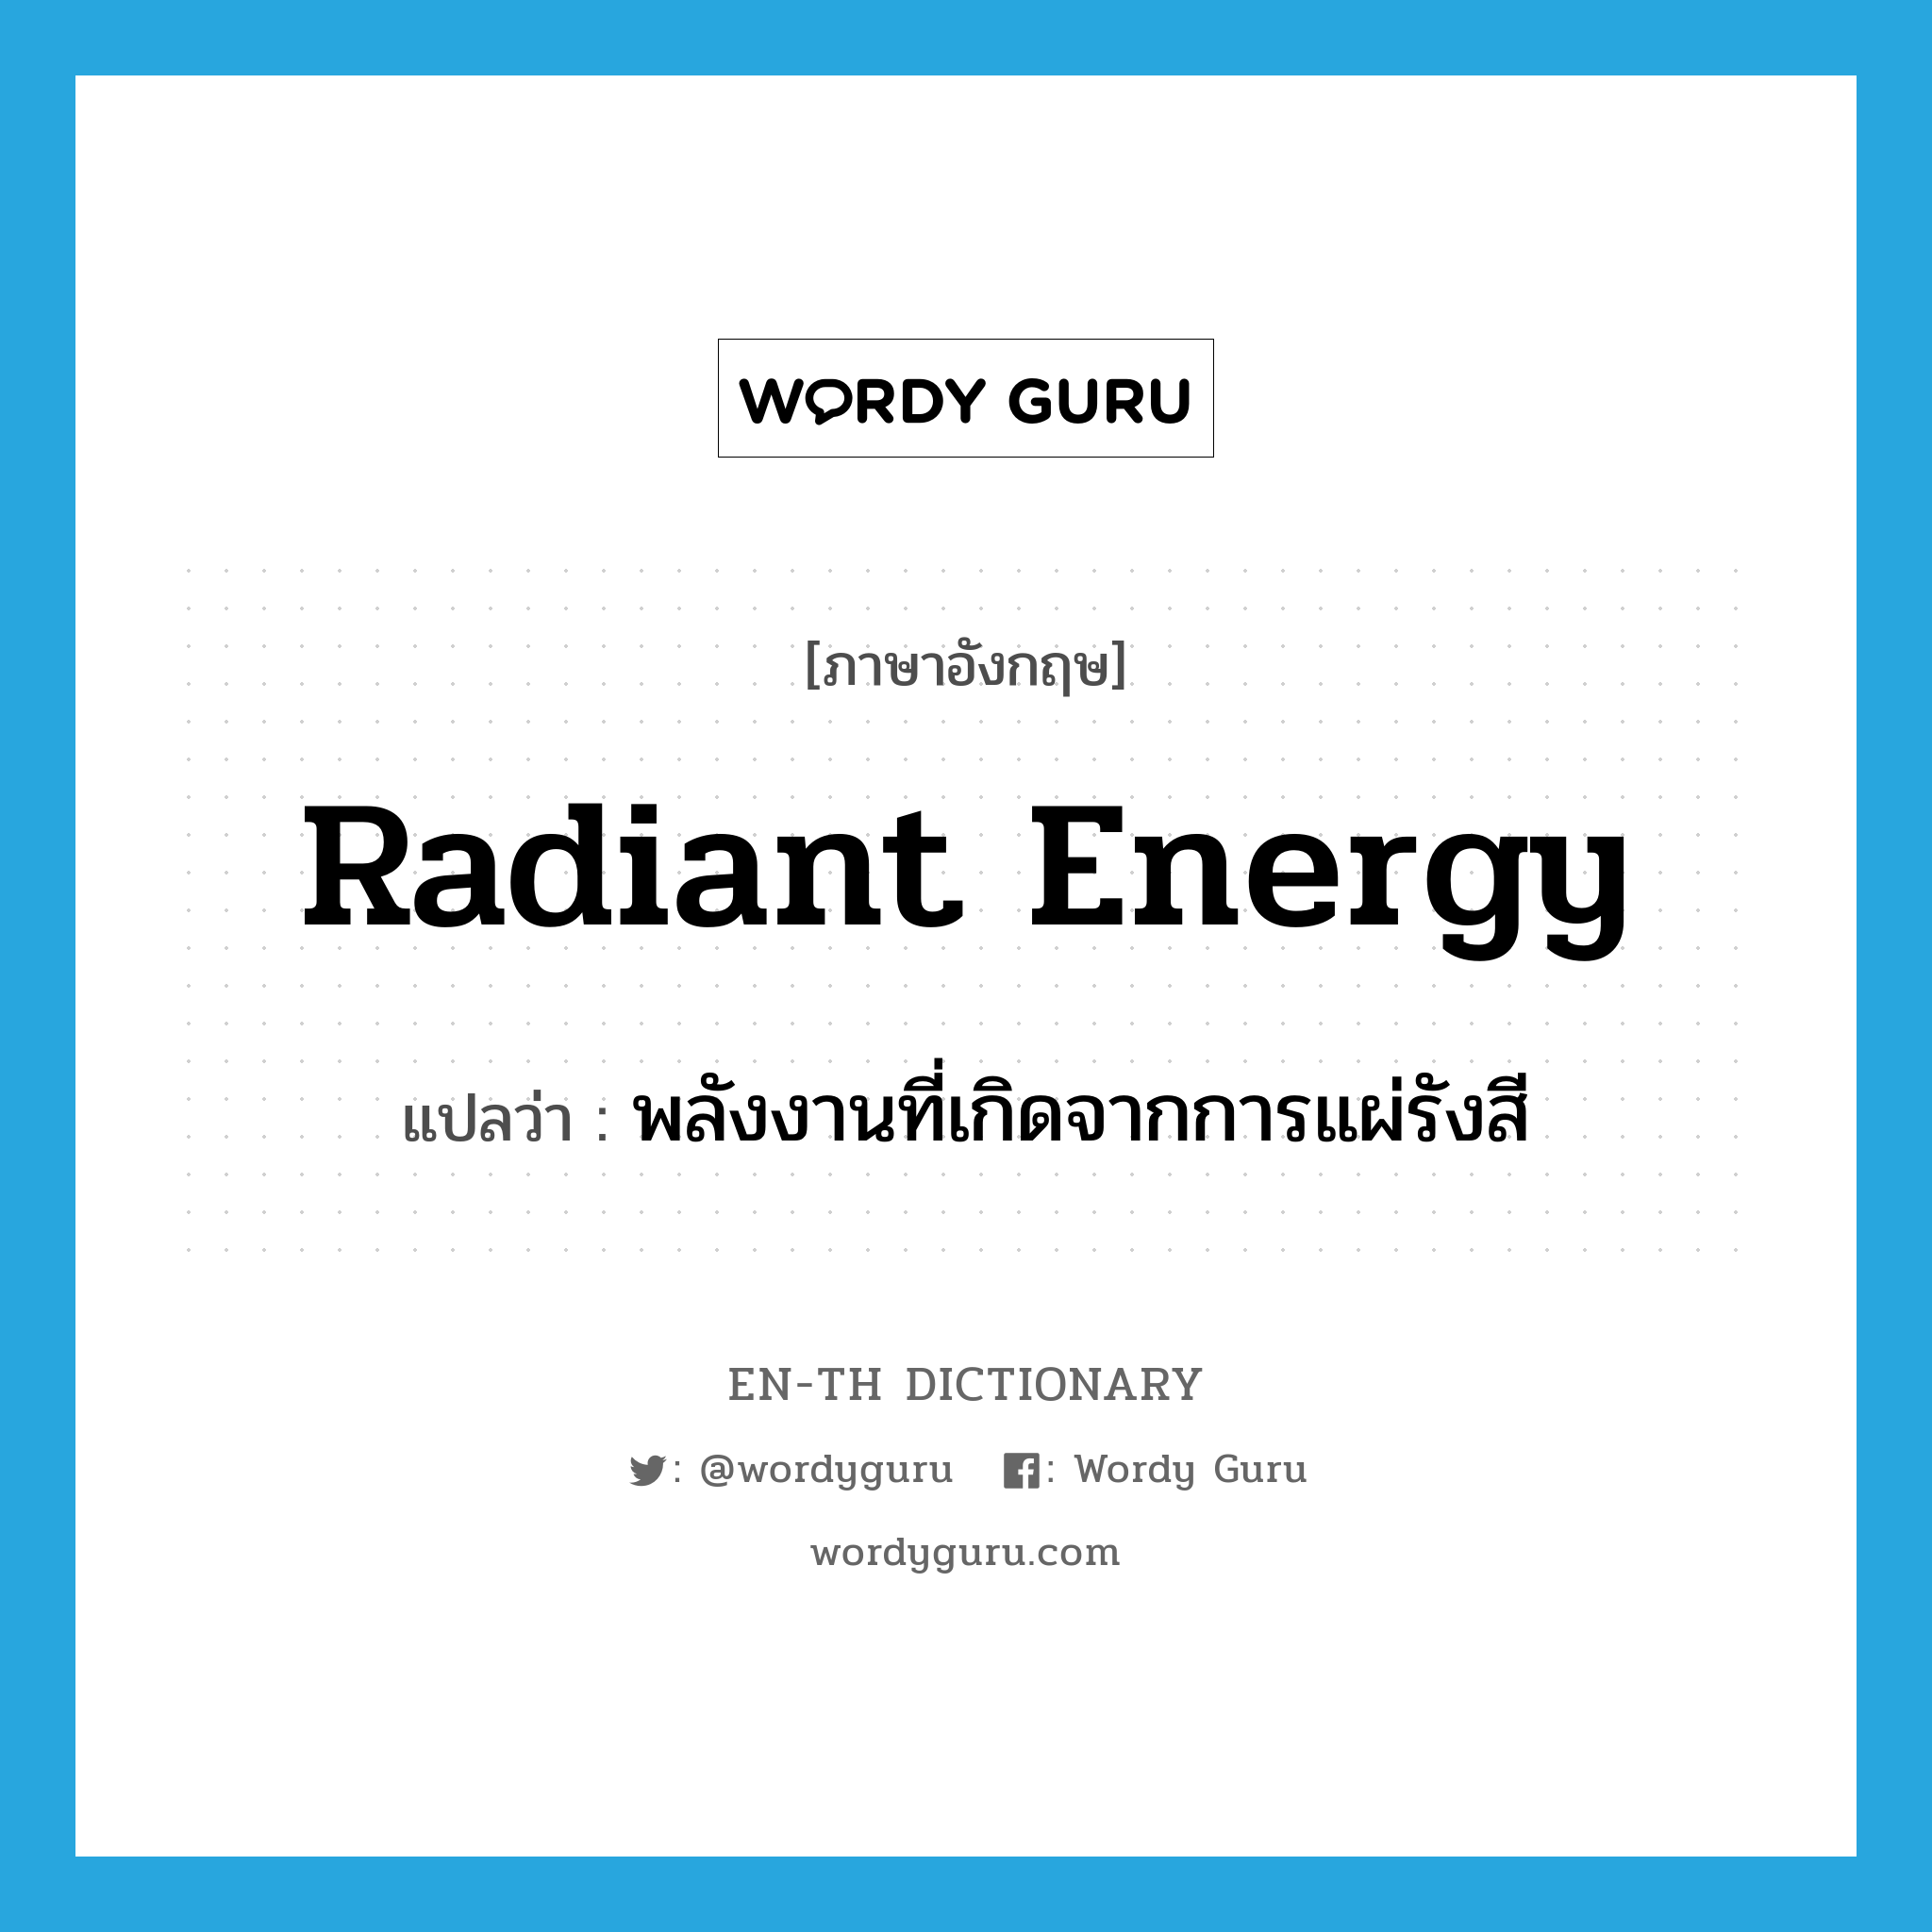 radiant energy แปลว่า?, คำศัพท์ภาษาอังกฤษ radiant energy แปลว่า พลังงานที่เกิดจากการแผ่รังสี ประเภท N หมวด N